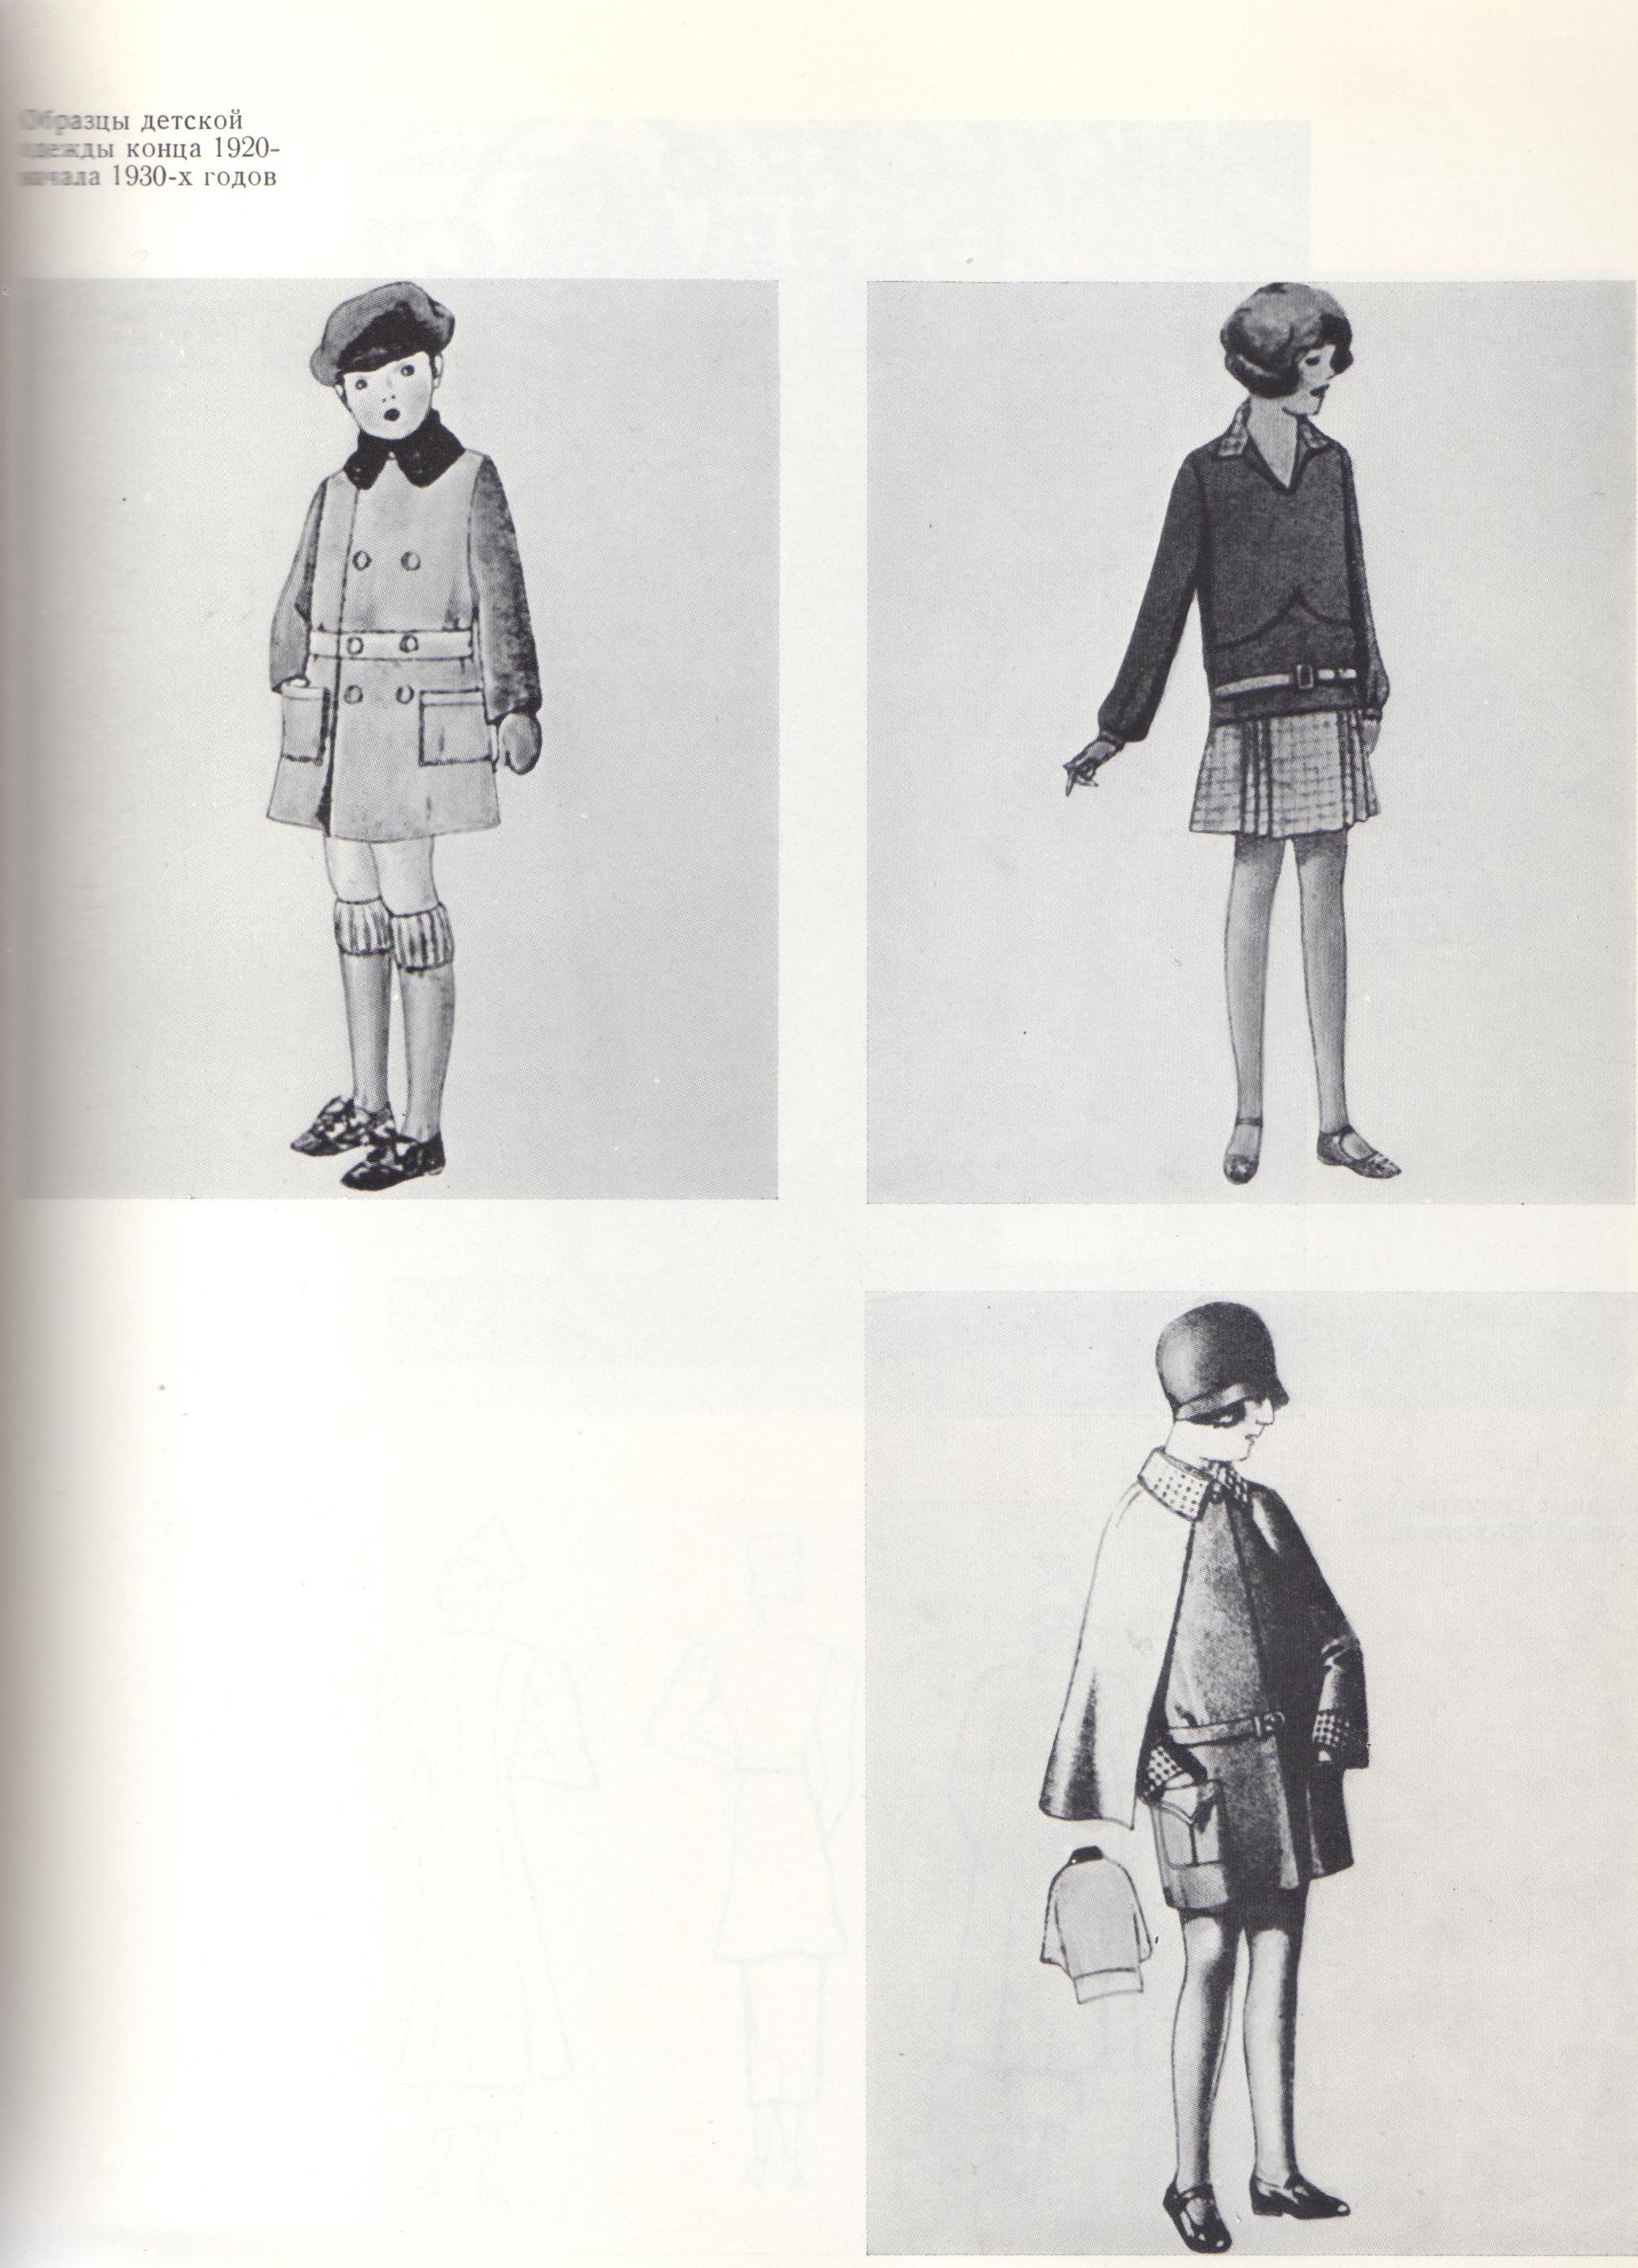 Образцы детской одежды конца 1920-начала 1930-х годов